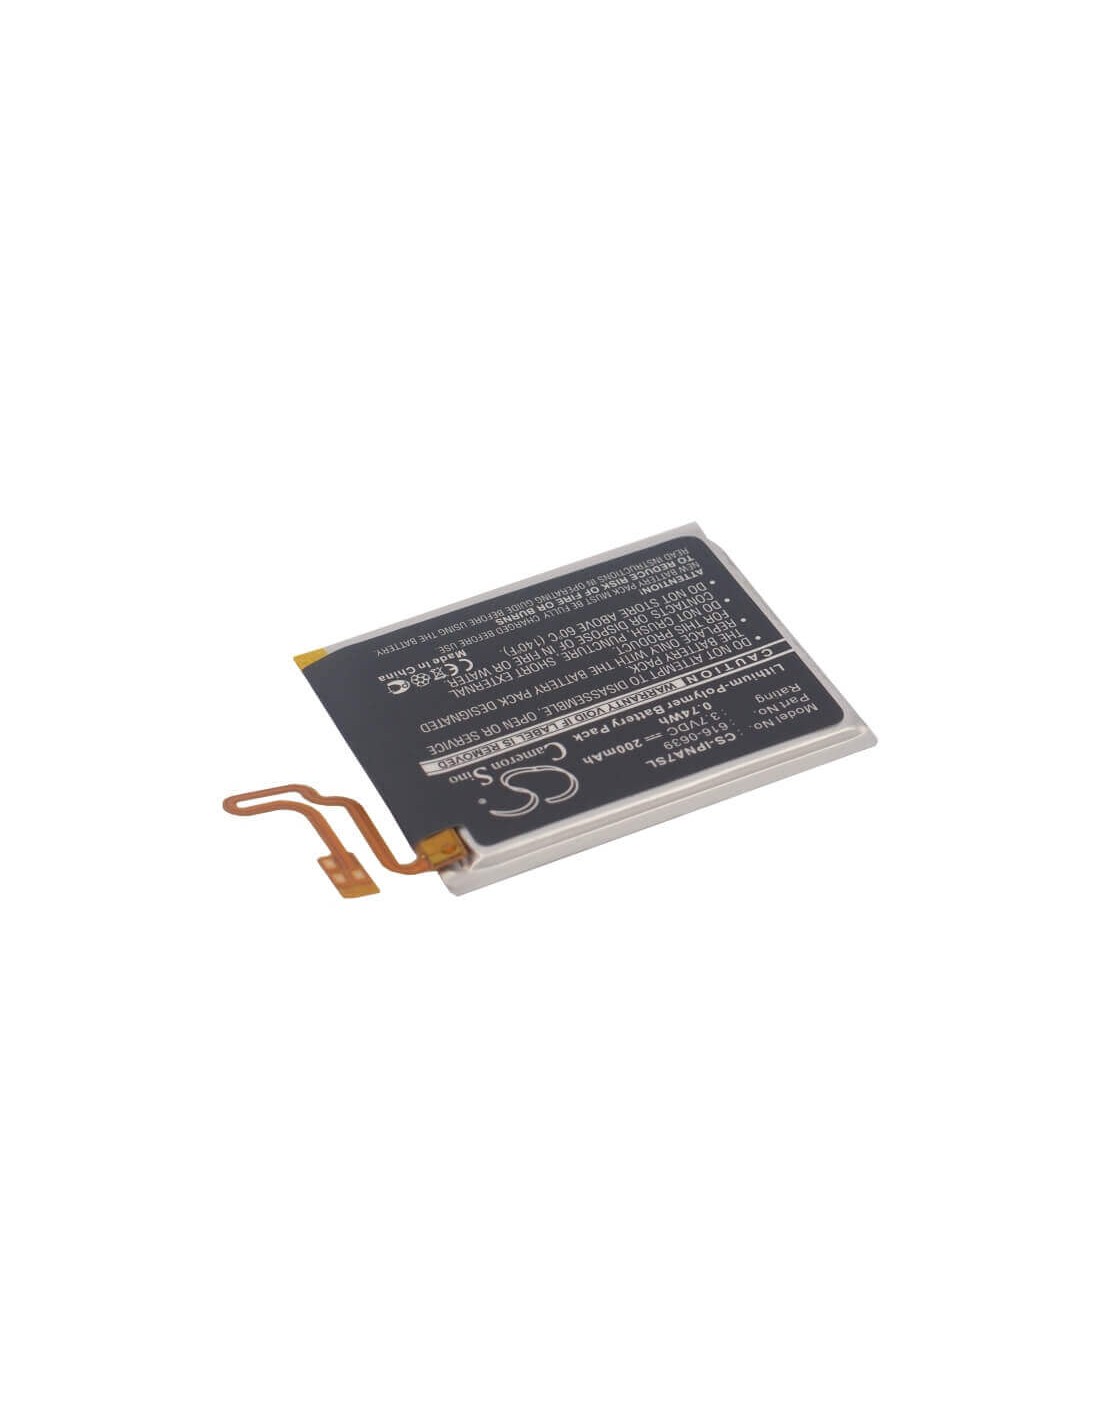 Battery for Apple Ipod Nano 7th, Ipod Nano 7 3.7V, 200mAh - 0.74Wh